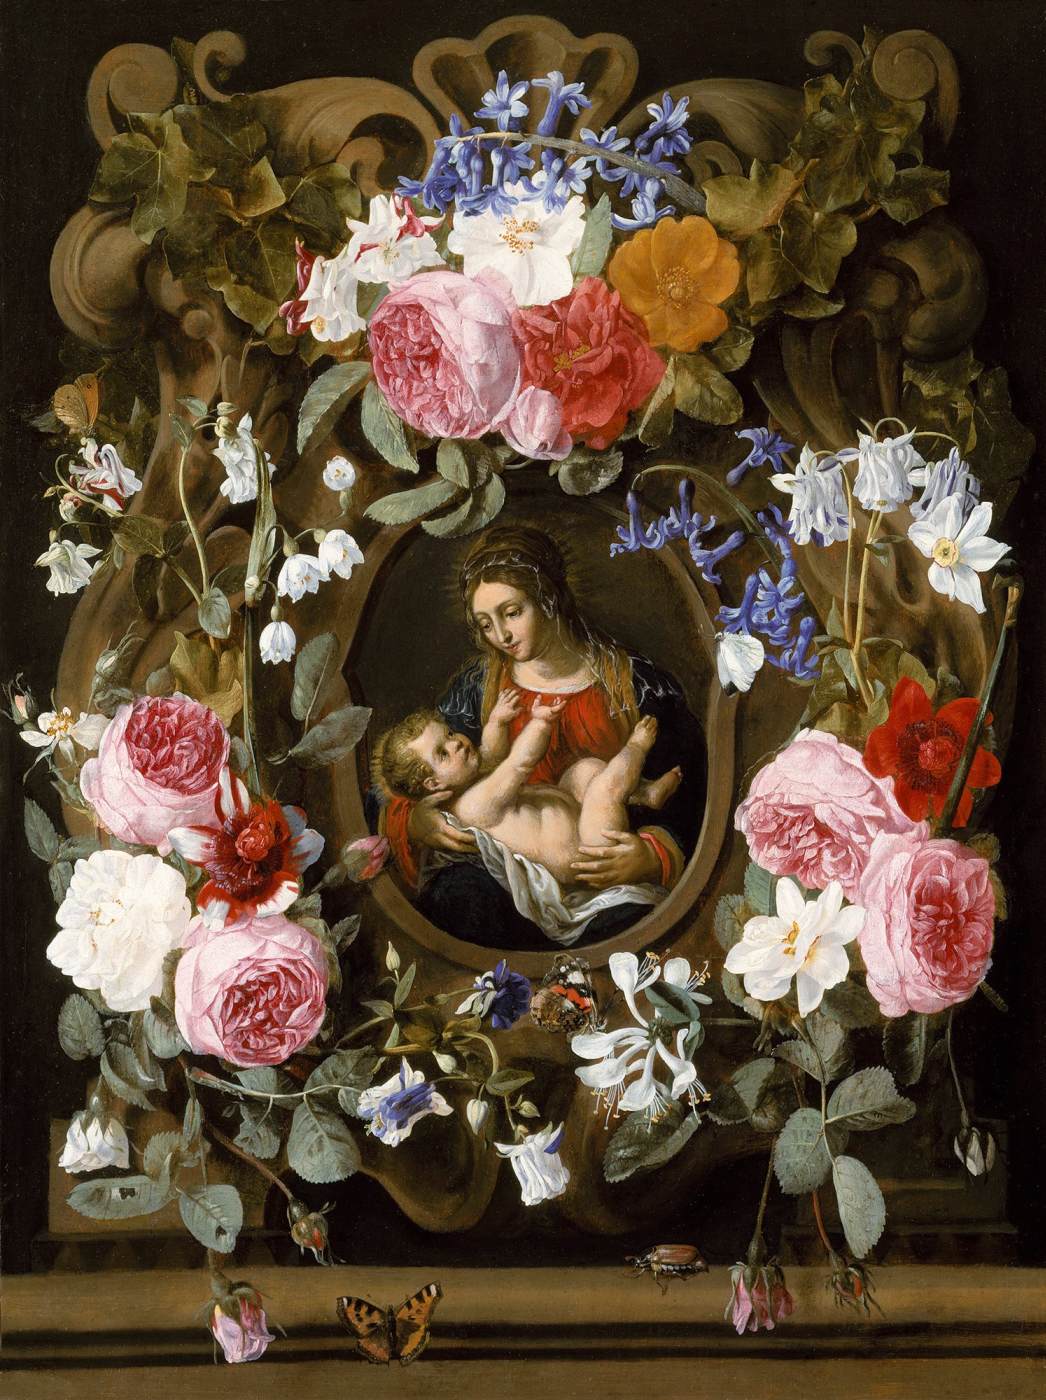 Guirlanda de flores com a Virgem e o Menino